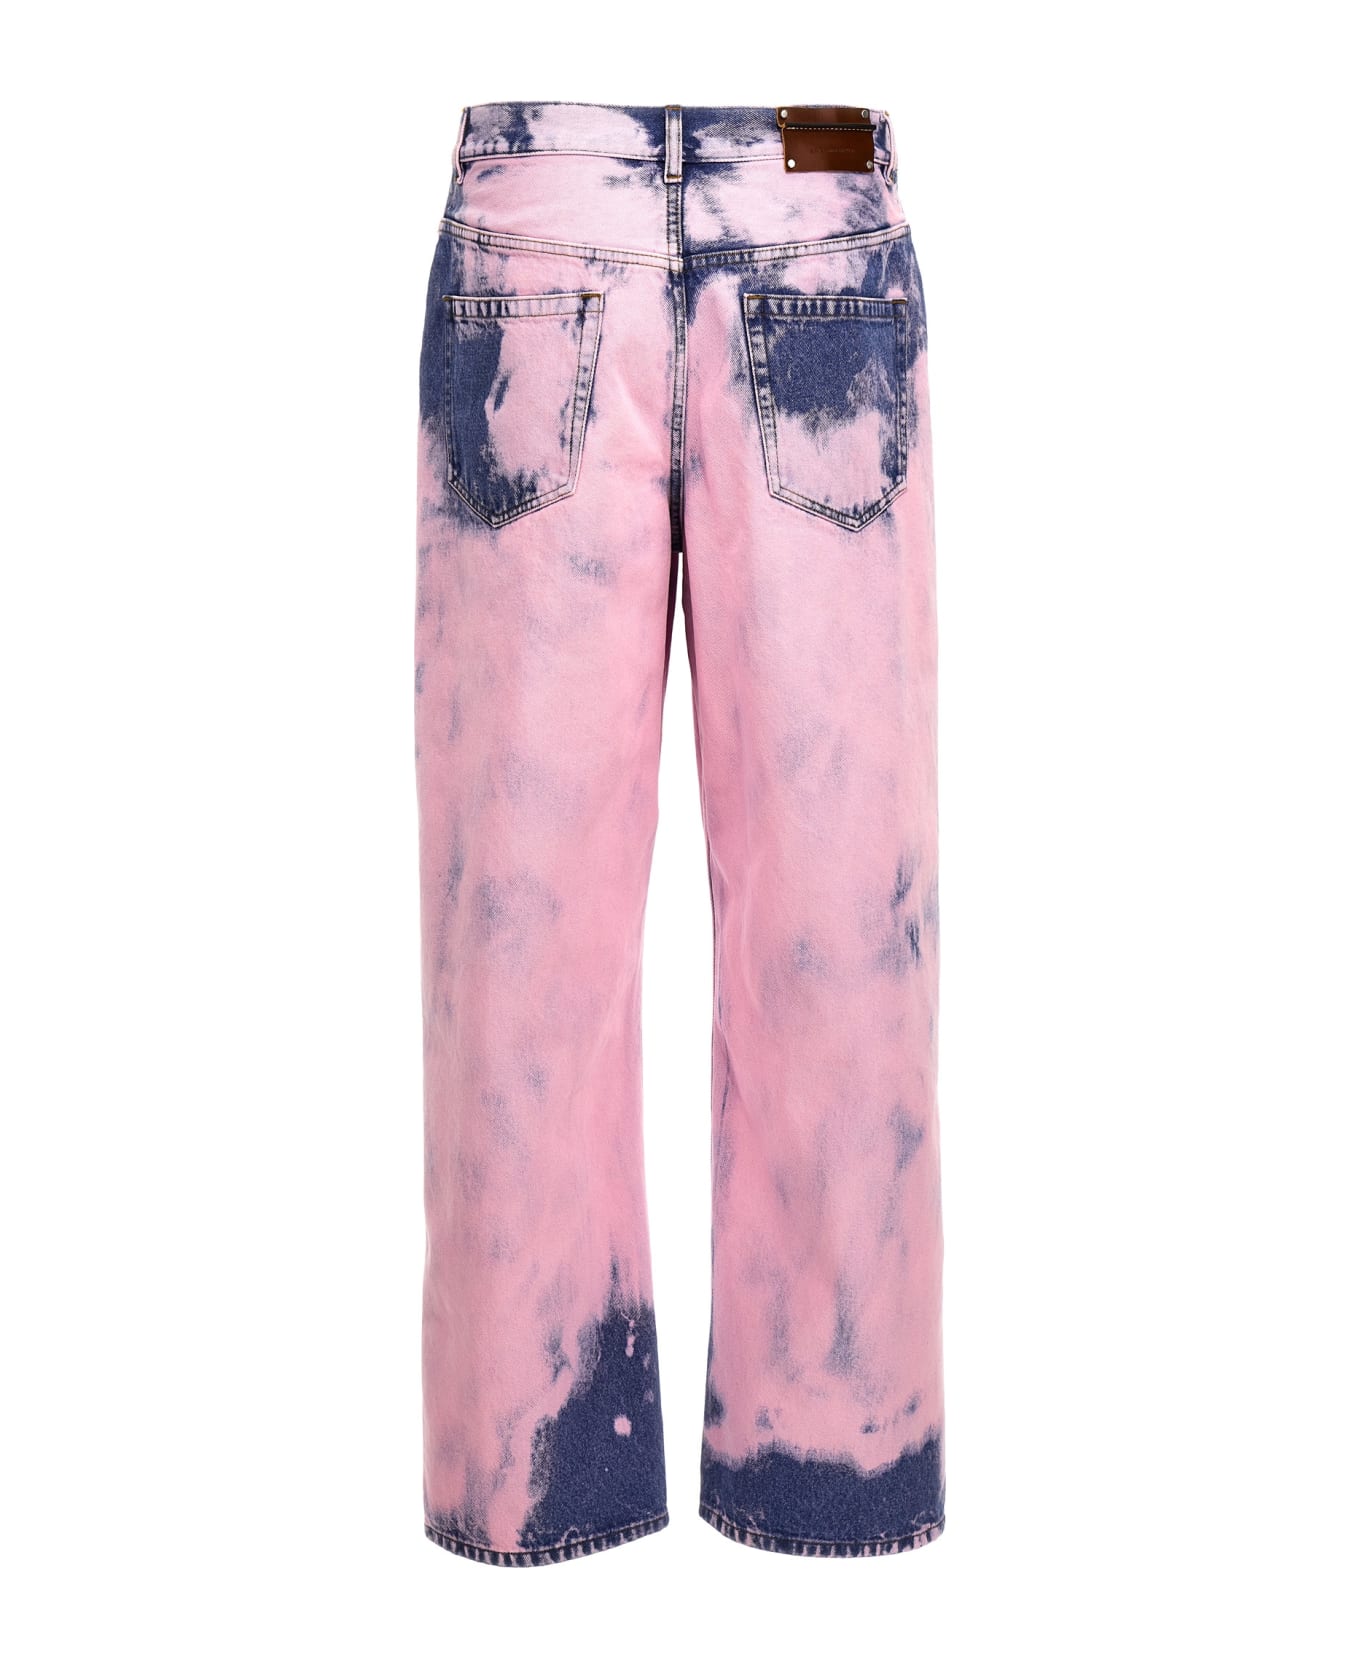 Dries Van Noten 5-pocket Jeans - Pink デニム